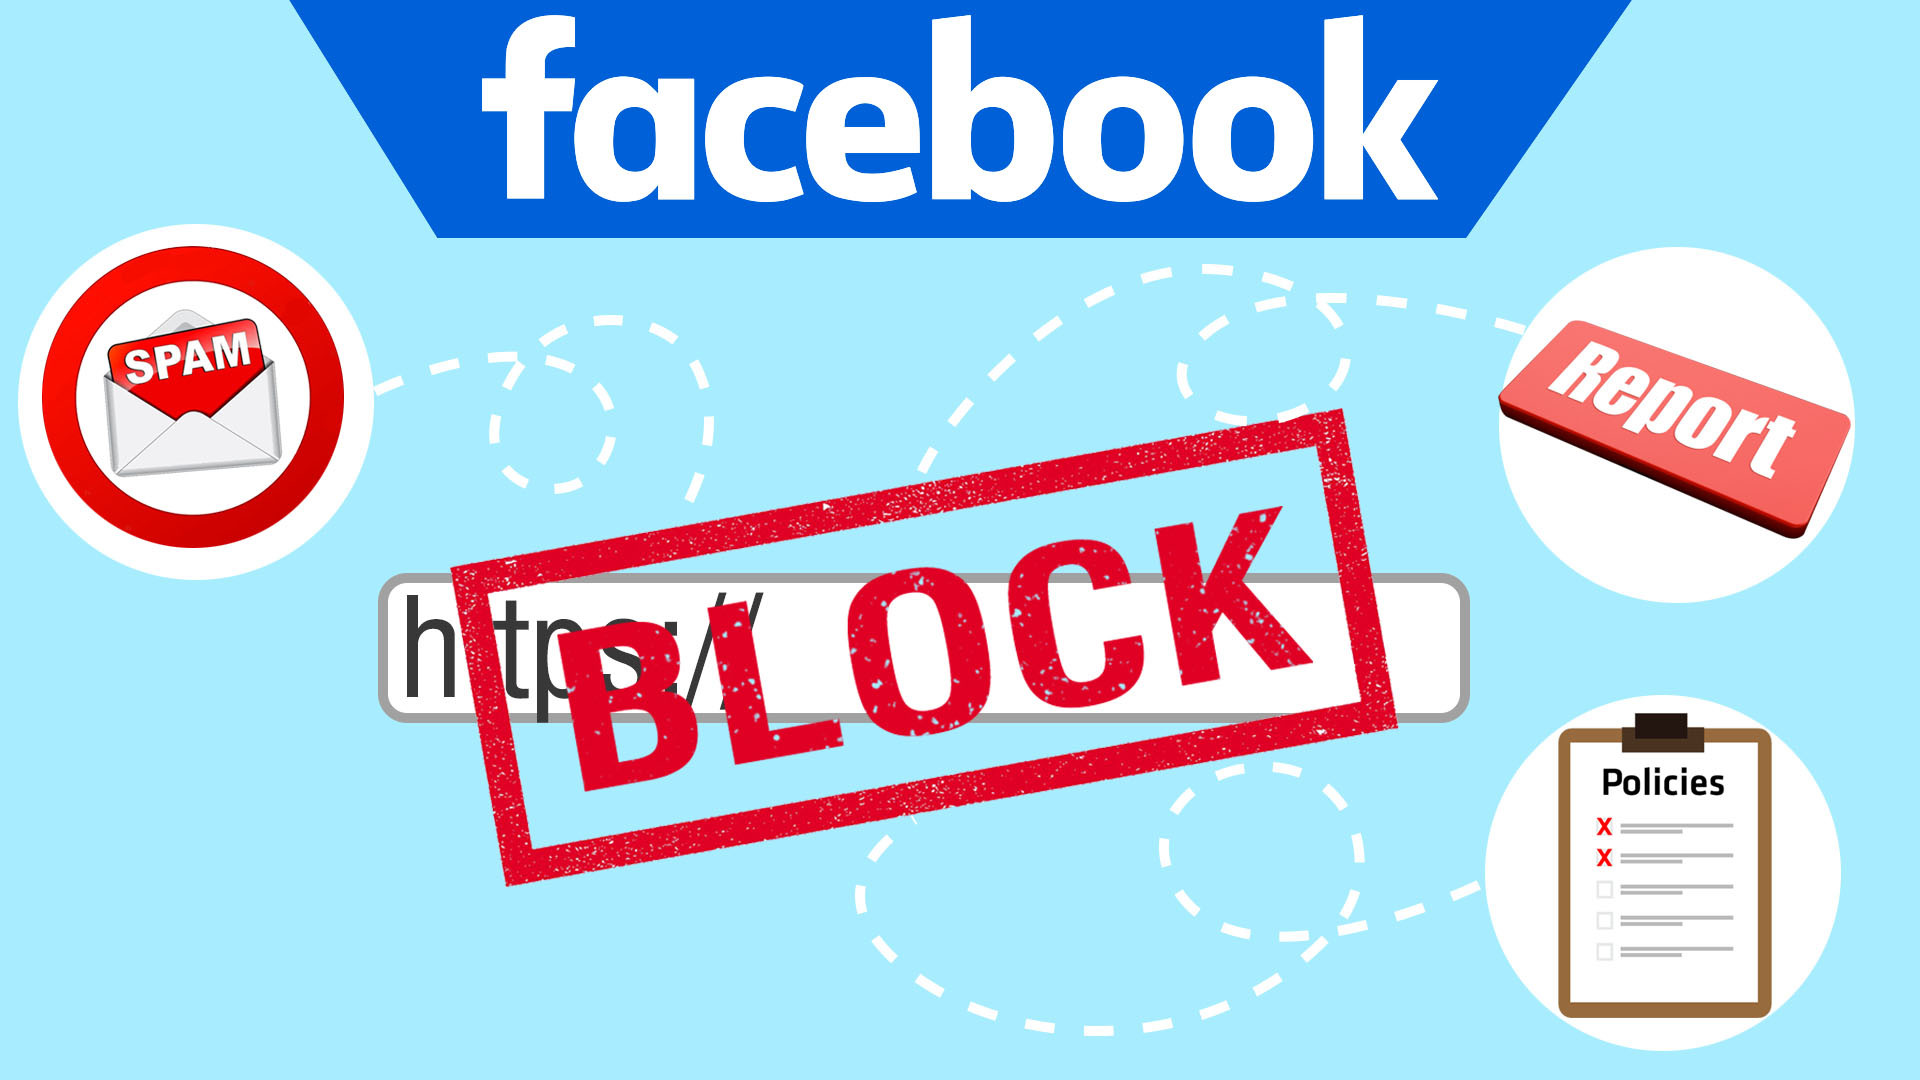 Đăng bài không đúng cách rất dễ khiến trang Facebook của bạn bị xóa